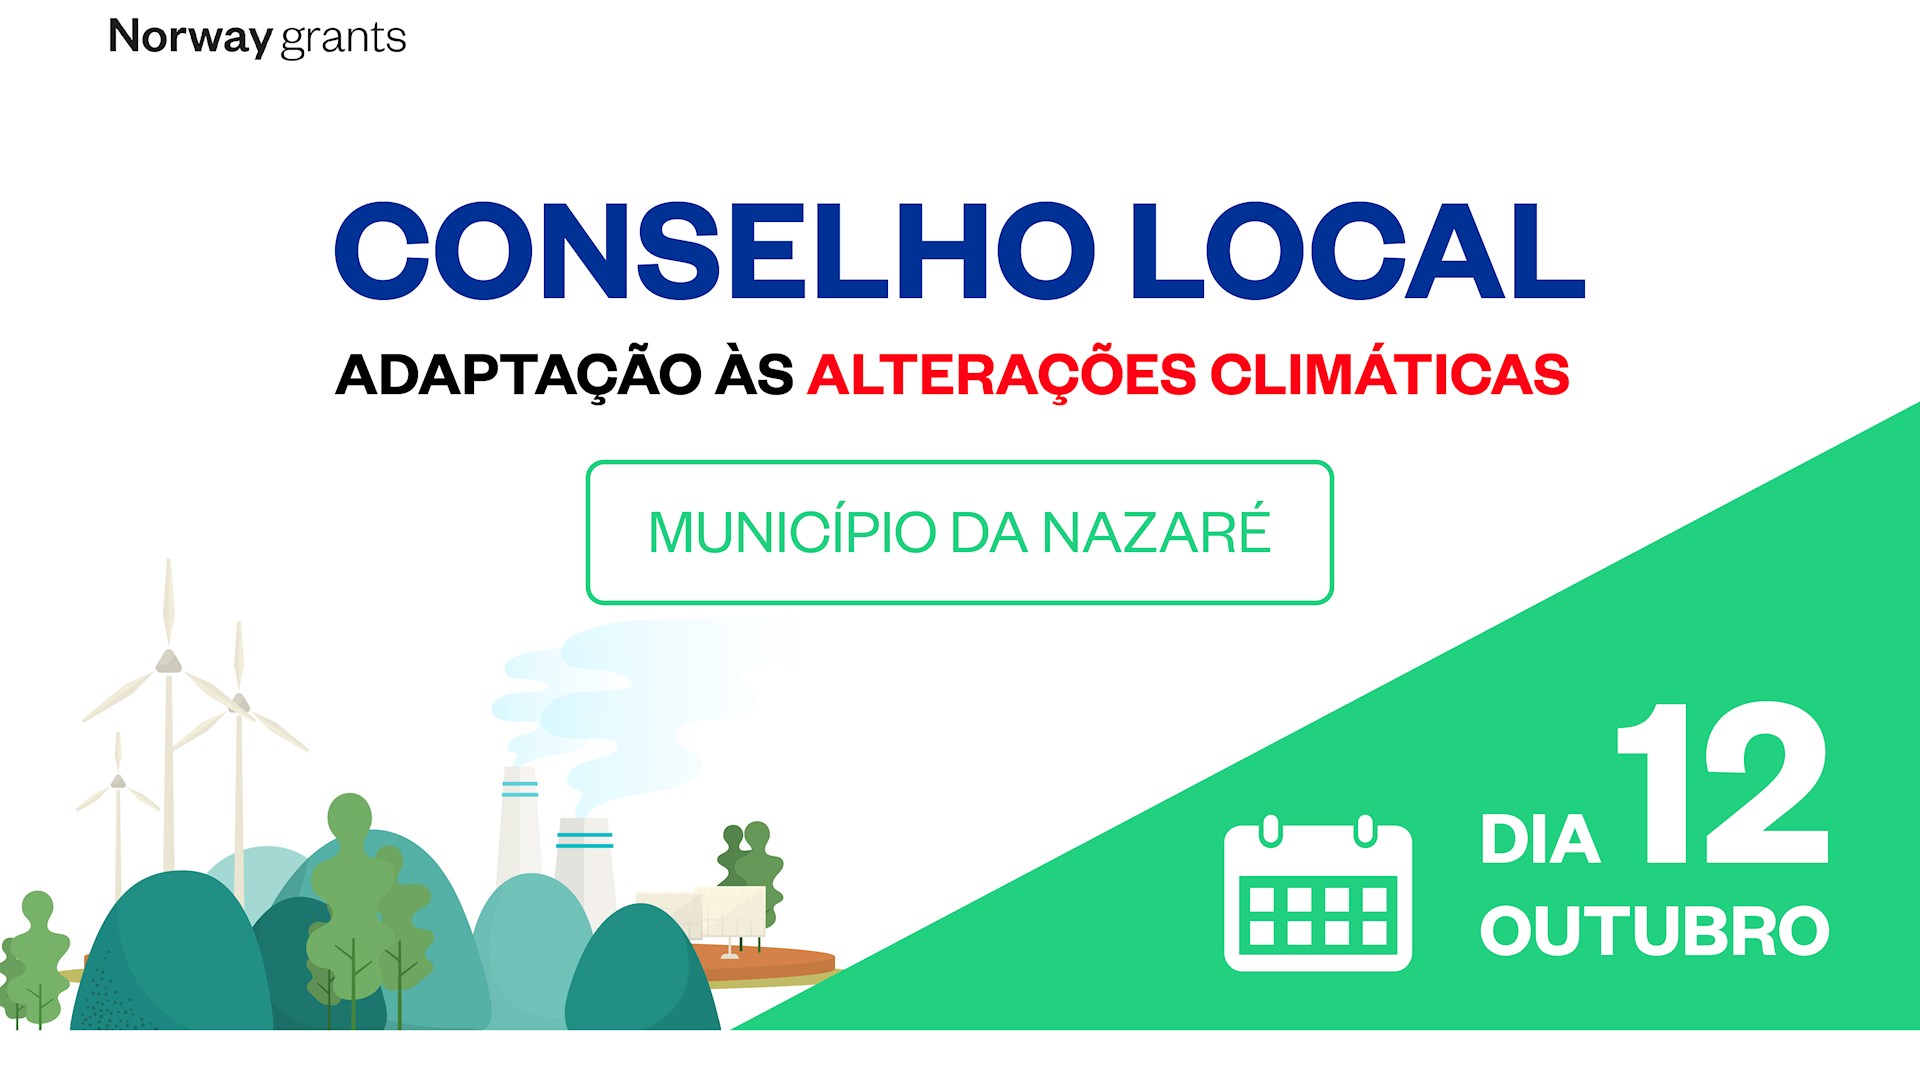 Conselho Local de Adaptação às Alterações Climáticas do Município da Nazaré